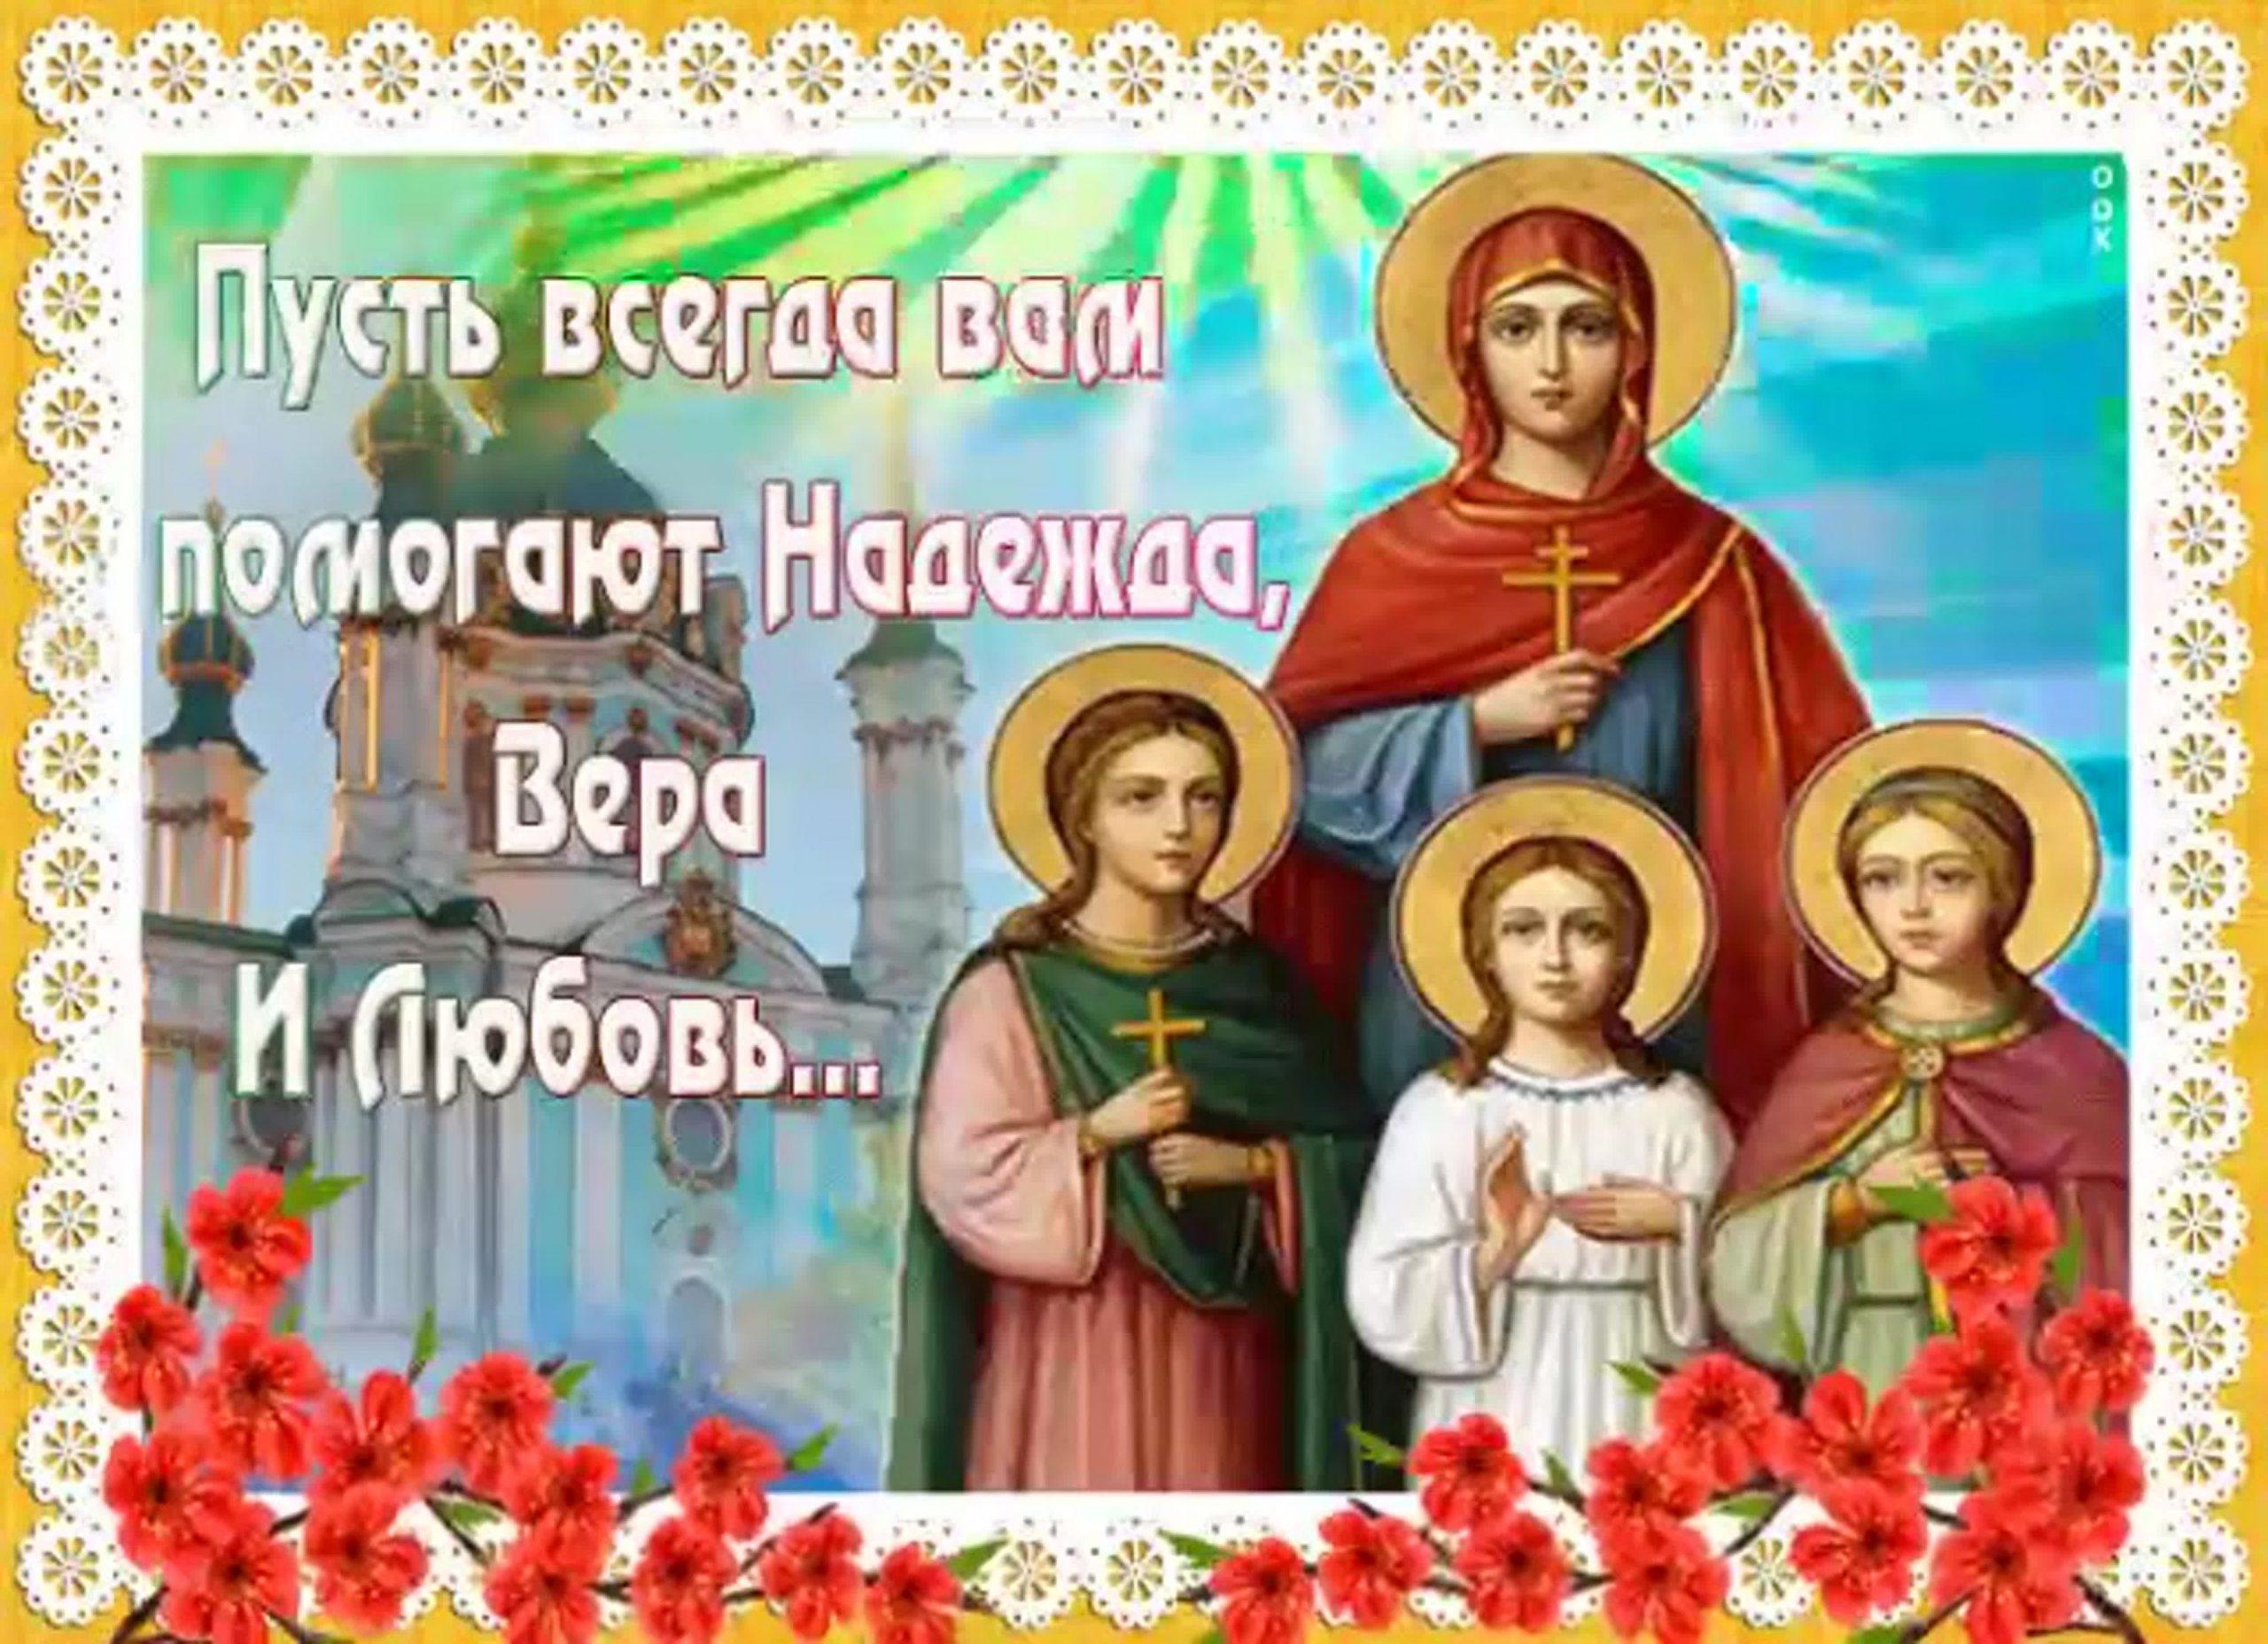 вера надежда любовь картинки с поздравлениями православные